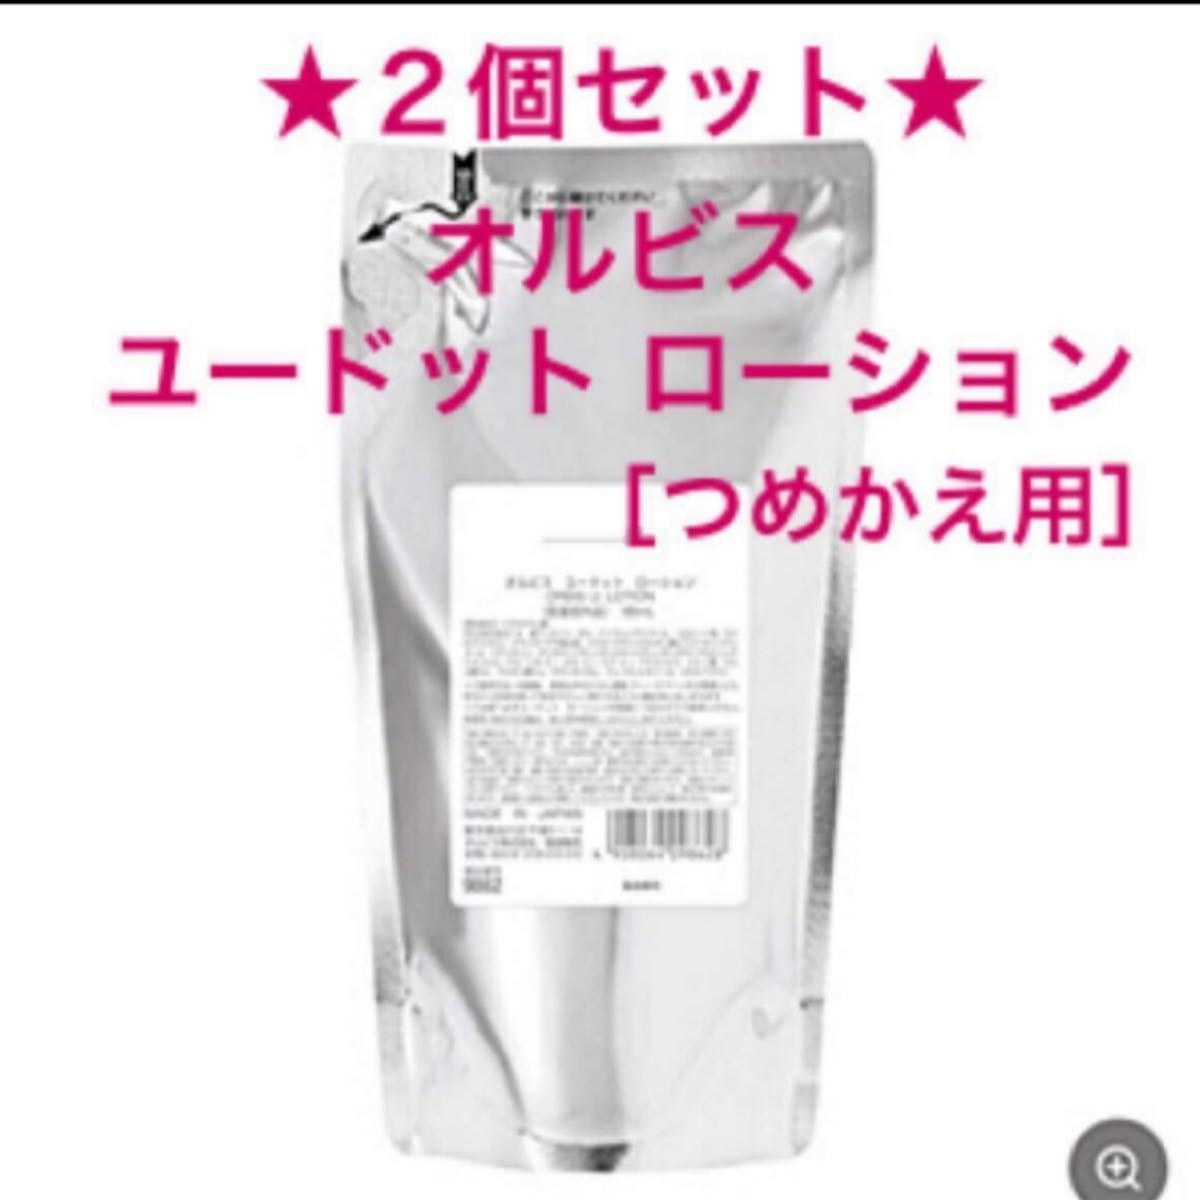 化粧水 ORBIS オルビスユードットローション詰替 【超歓迎された】